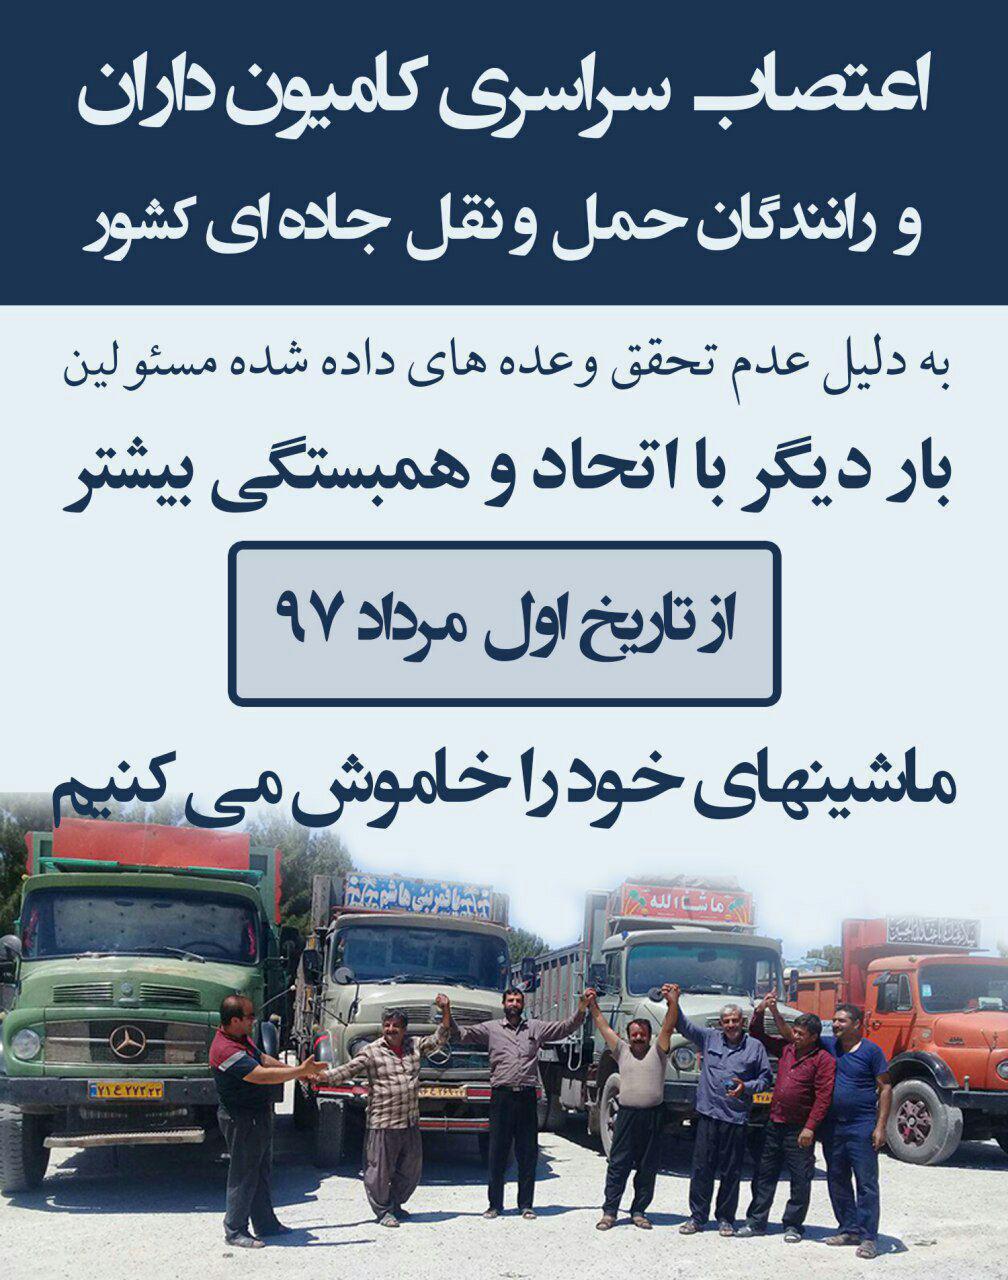 فراخوان برای اعتصاب سراسری کامیون داران و رانندگان حمل و نقل جاده ای کشور از اول مرداد ۹۷